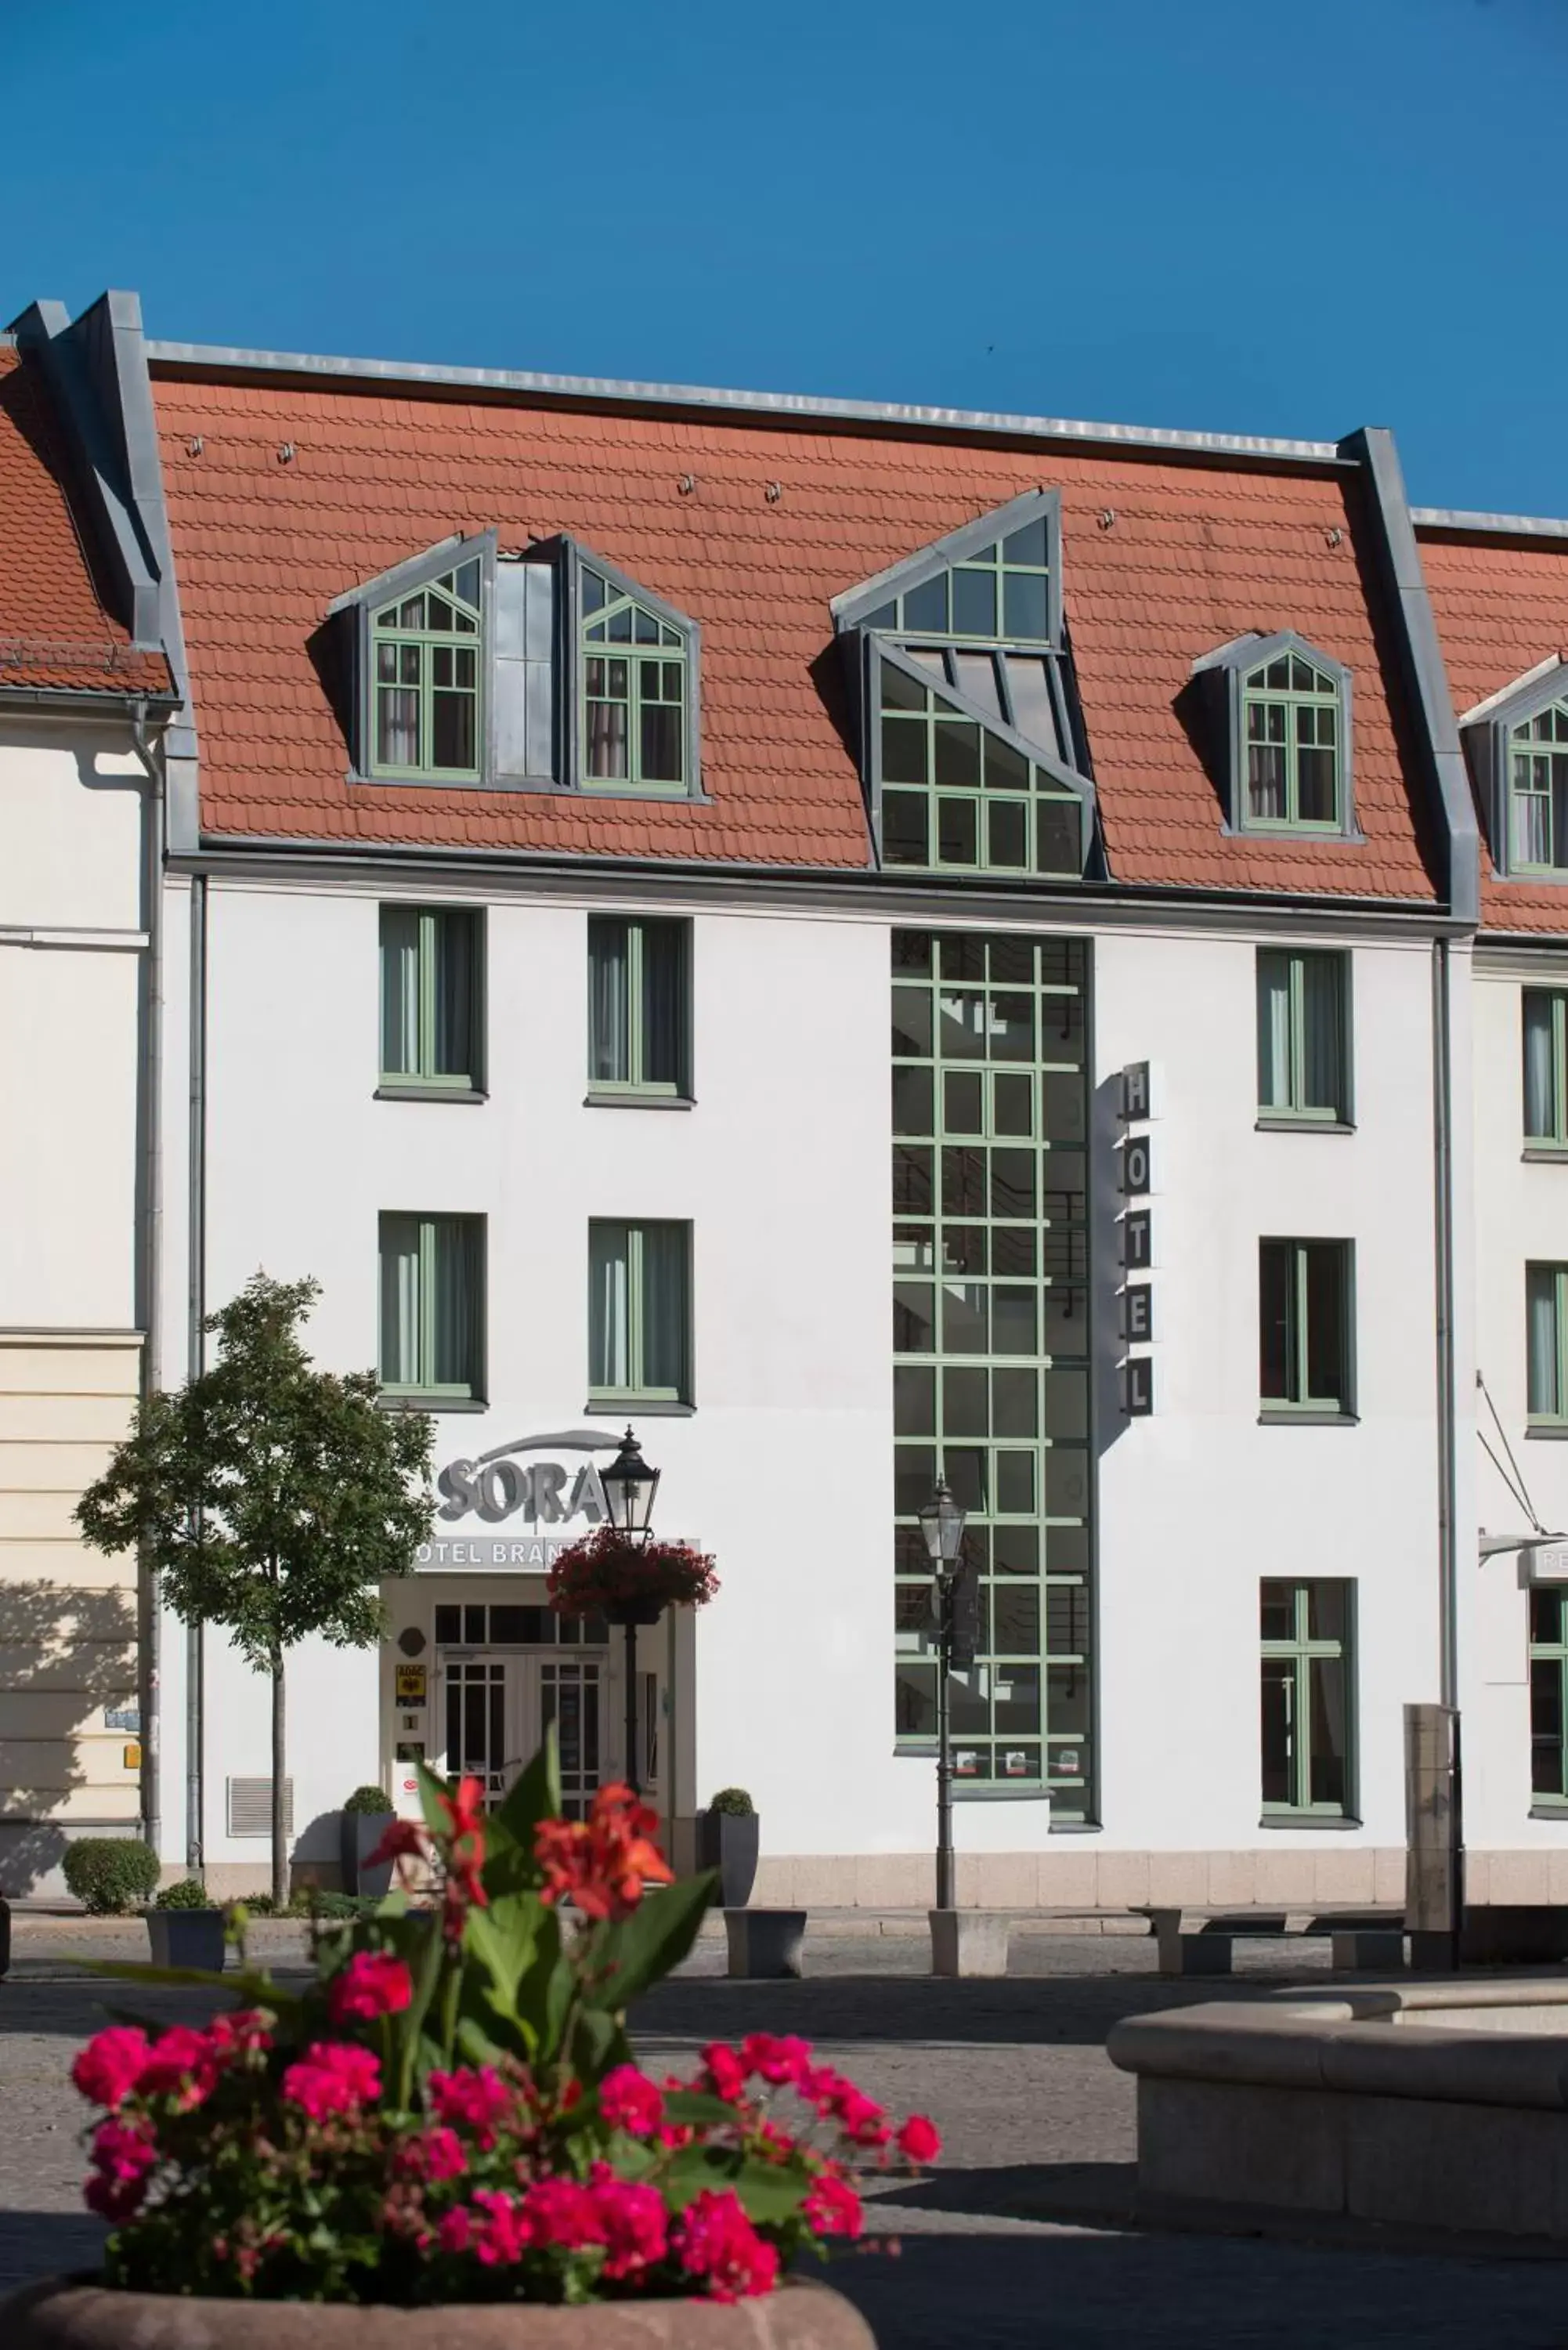 Facade/entrance, Property Building in SORAT Hotel Brandenburg